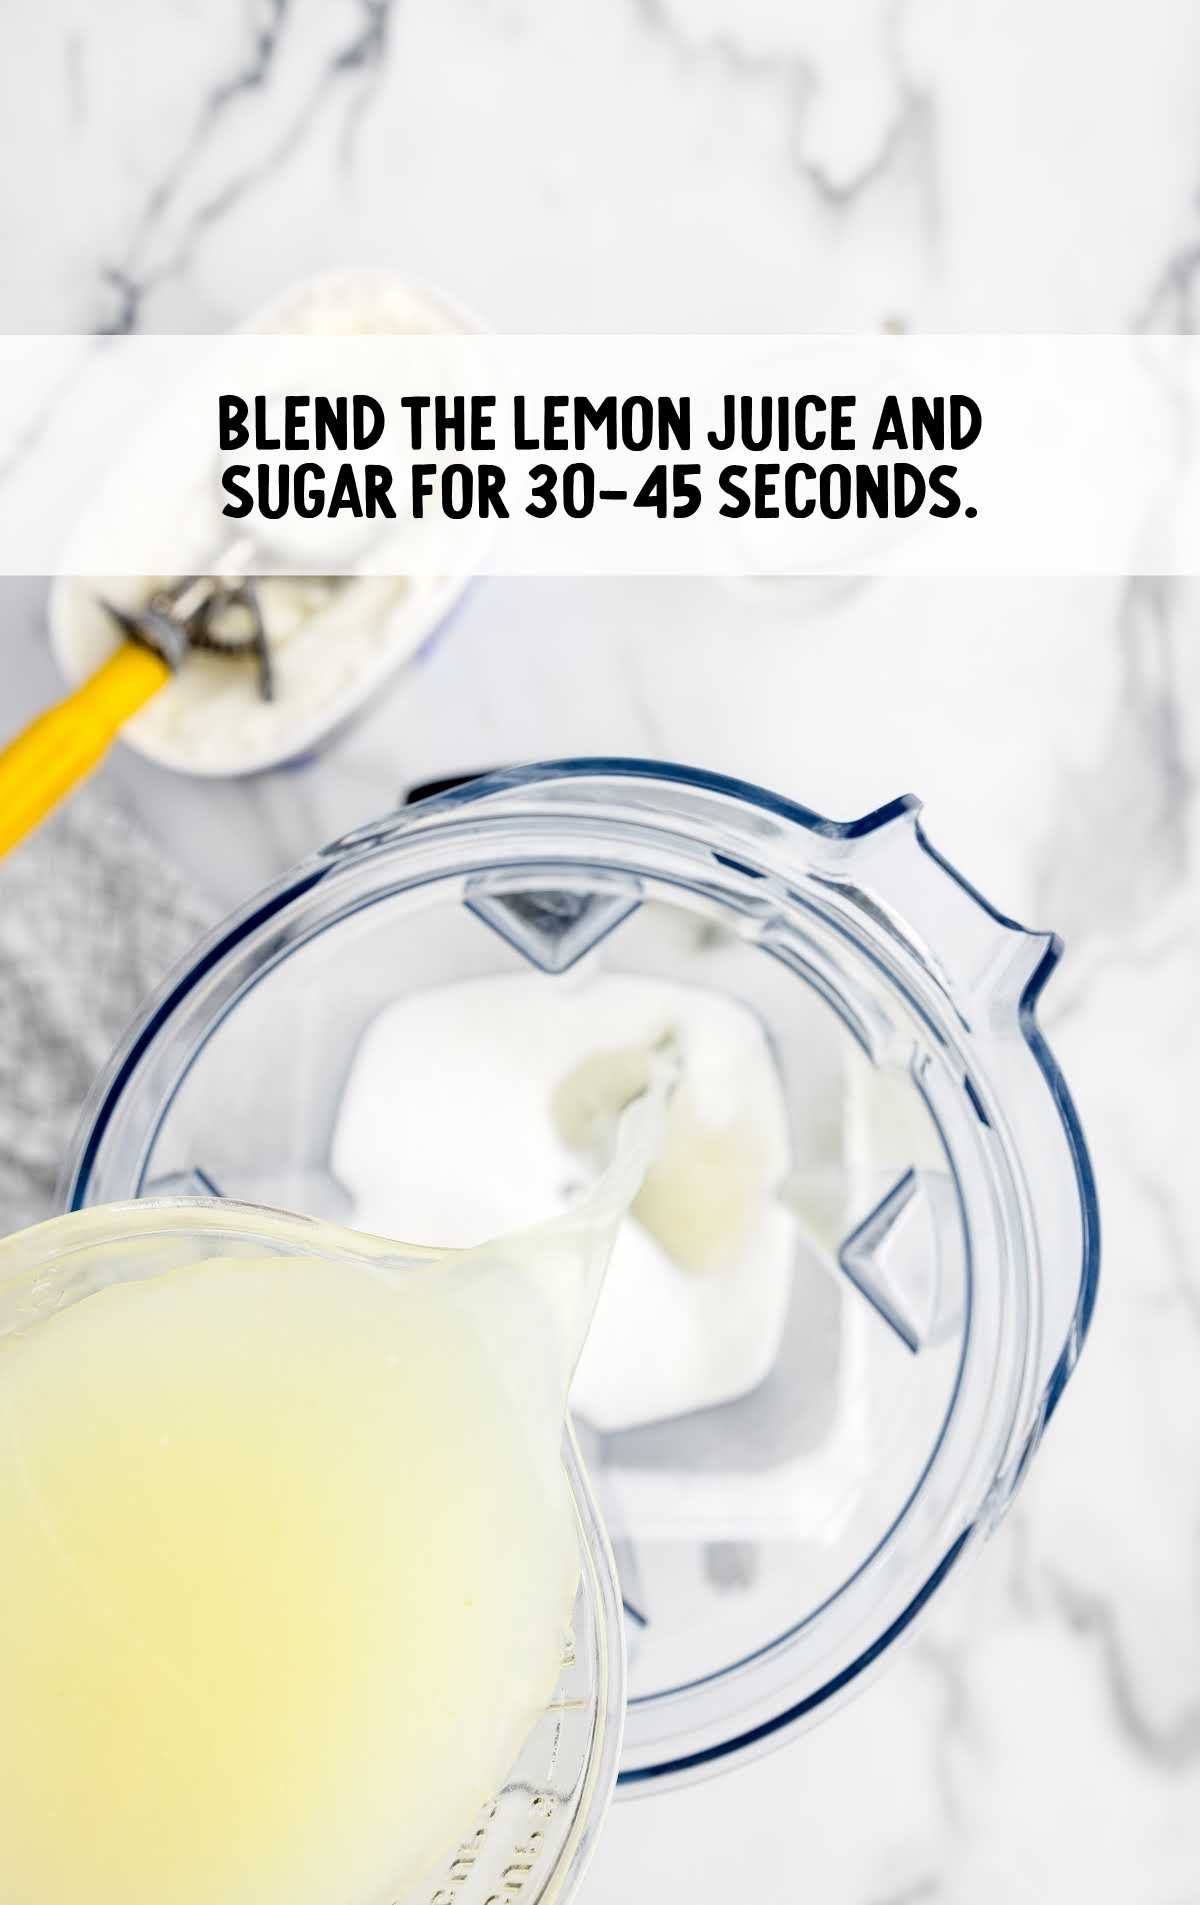 lemon juice and sugar blended in a blender